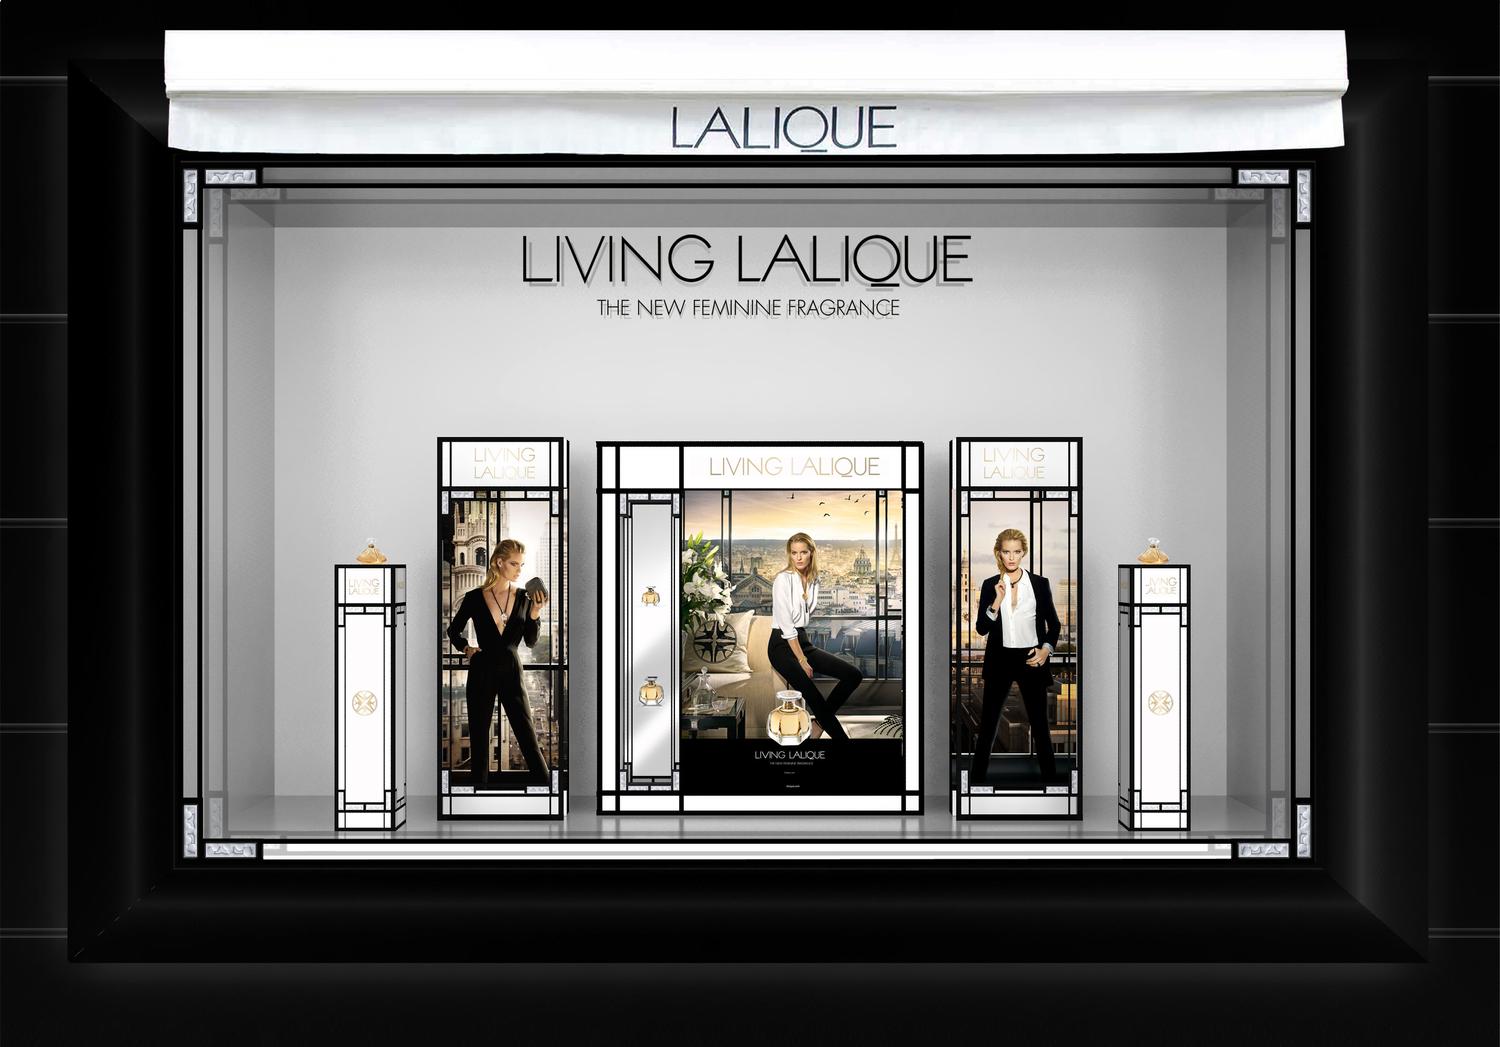 vitrine parfum lalique